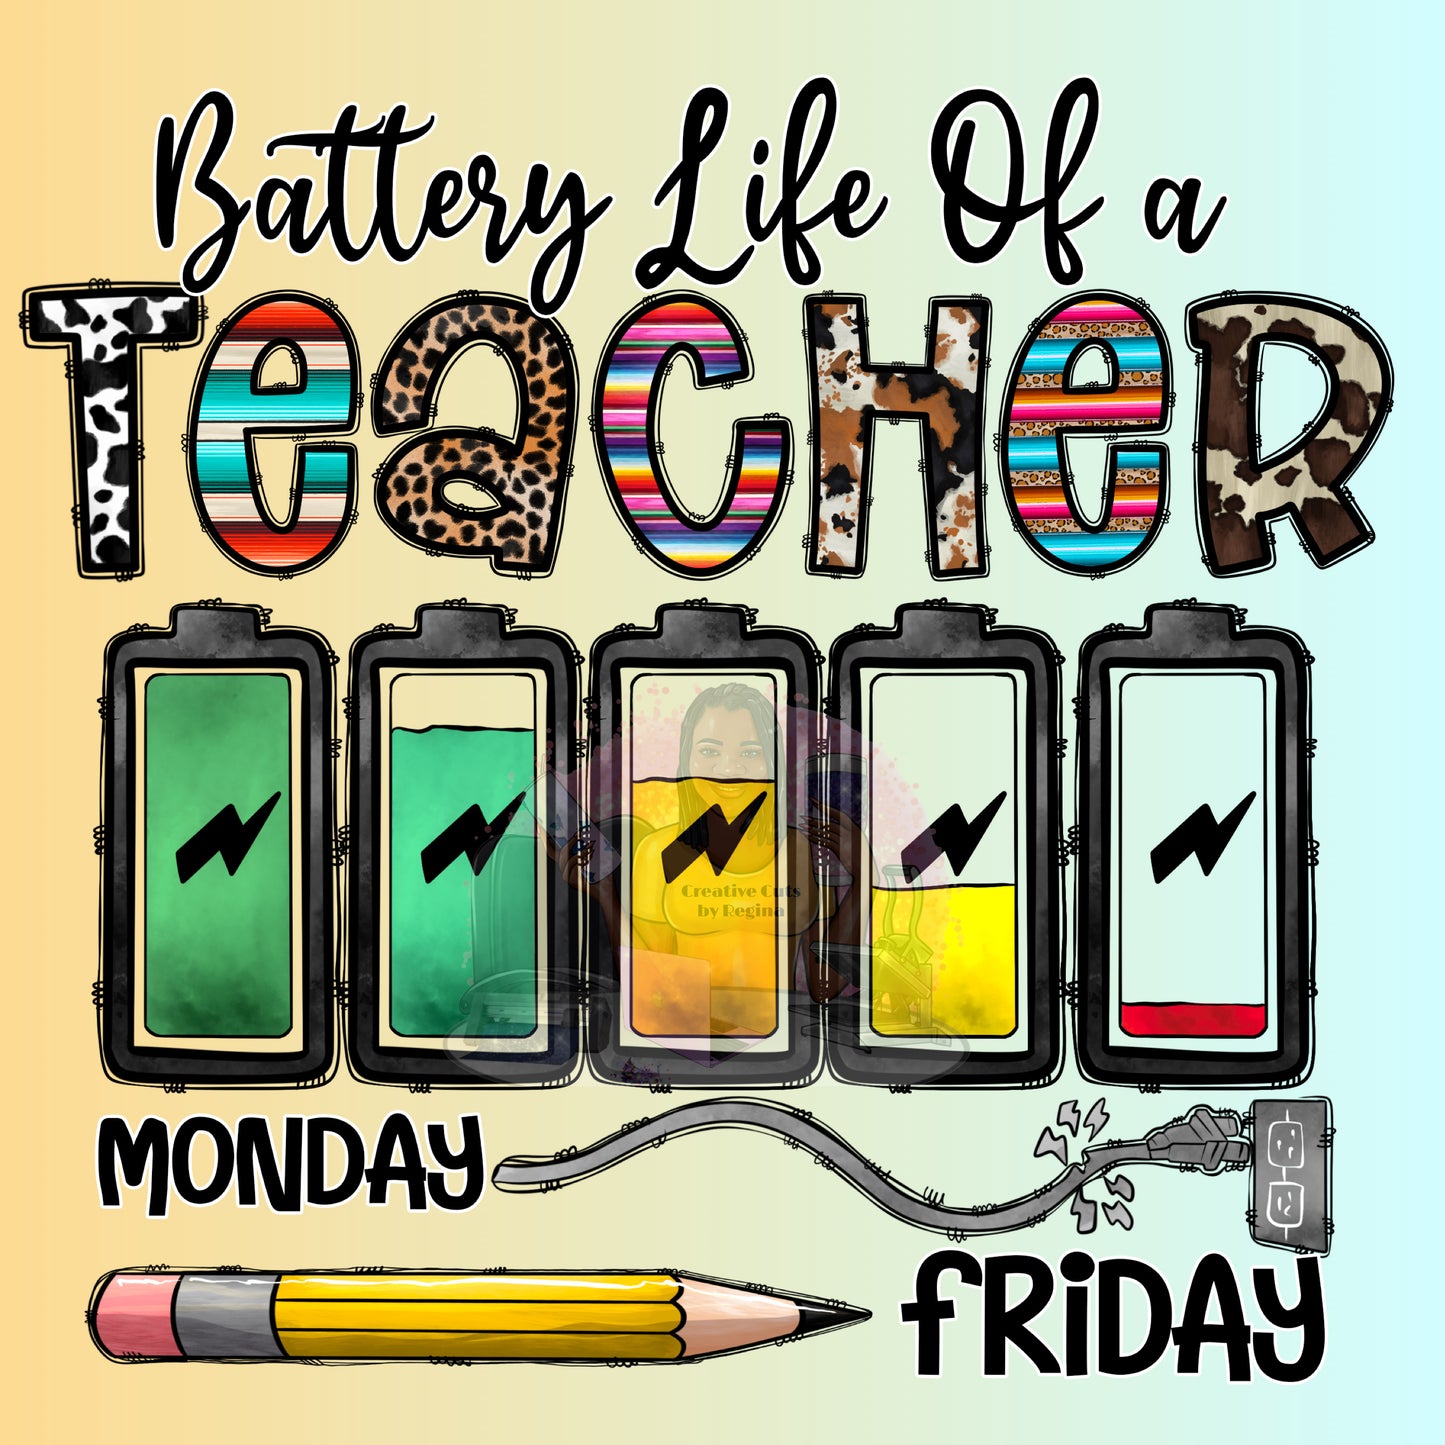 Teacher_batterylife